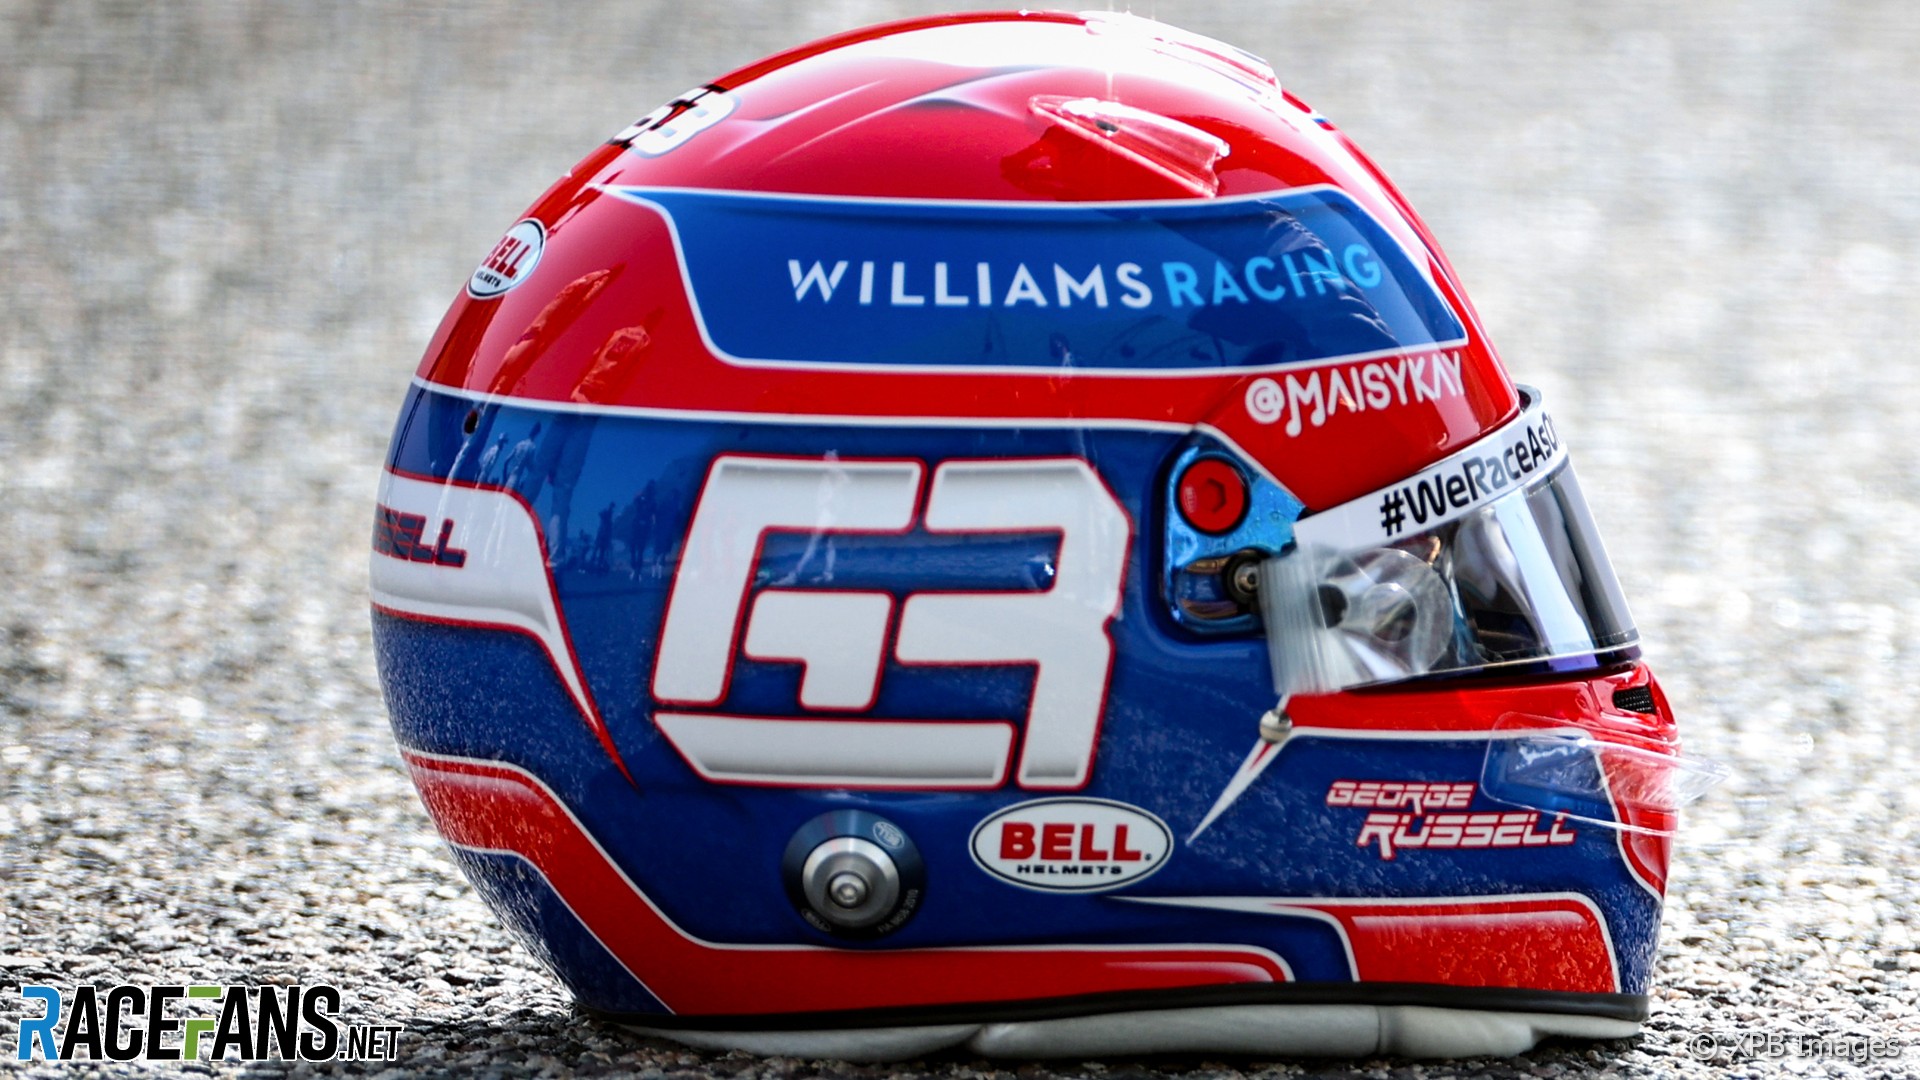 George Russell’s 2021 F1 helmet